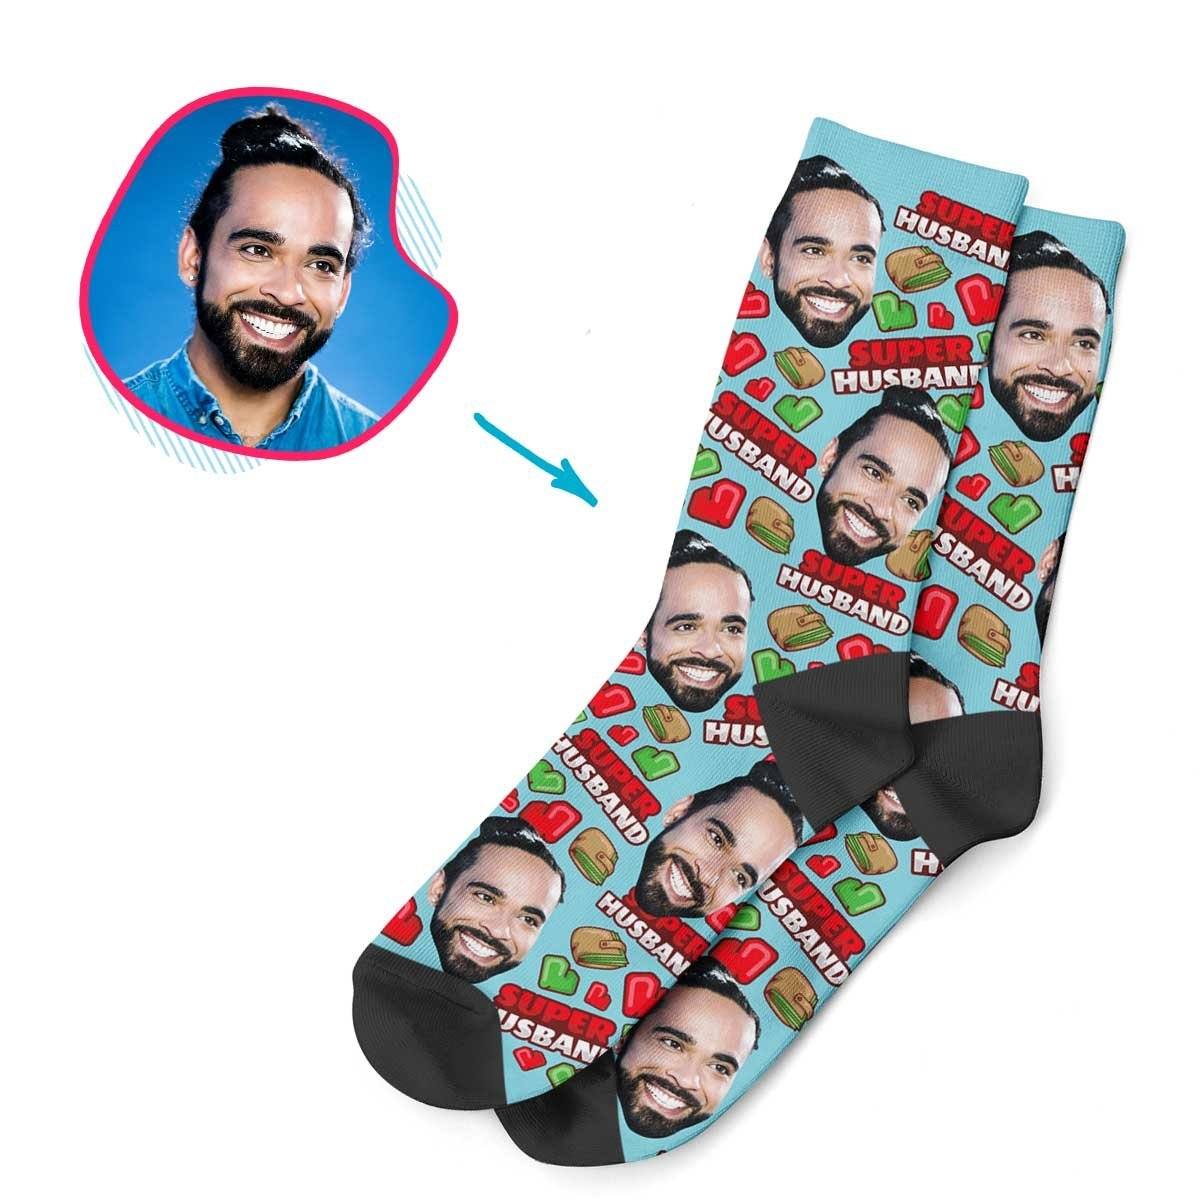 Husband Personalized Socks